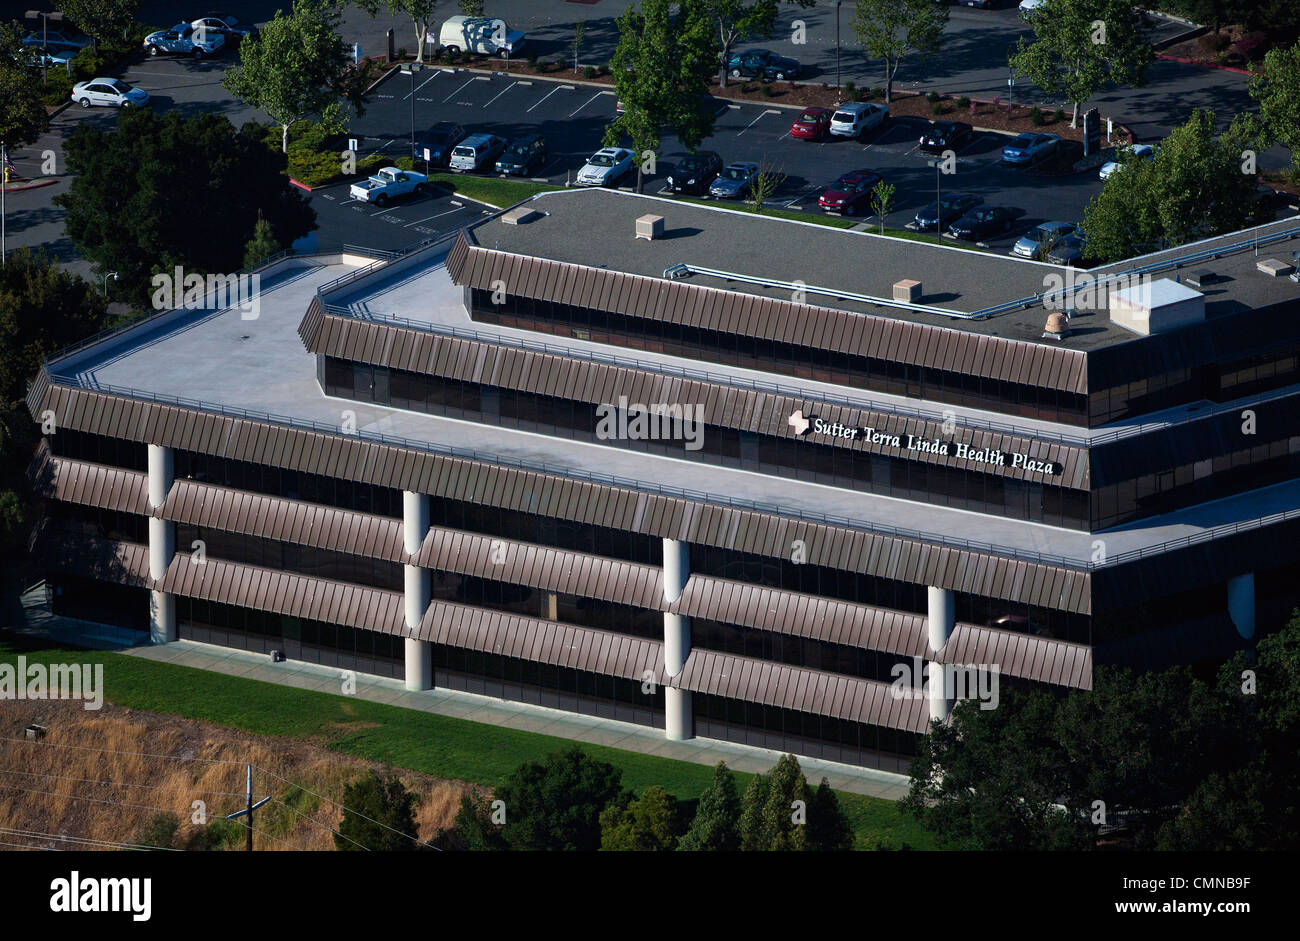 Photographie aérienne Sutter Terra Linda Hôpital Santé Plaza le comté de Marin, en Californie Banque D'Images